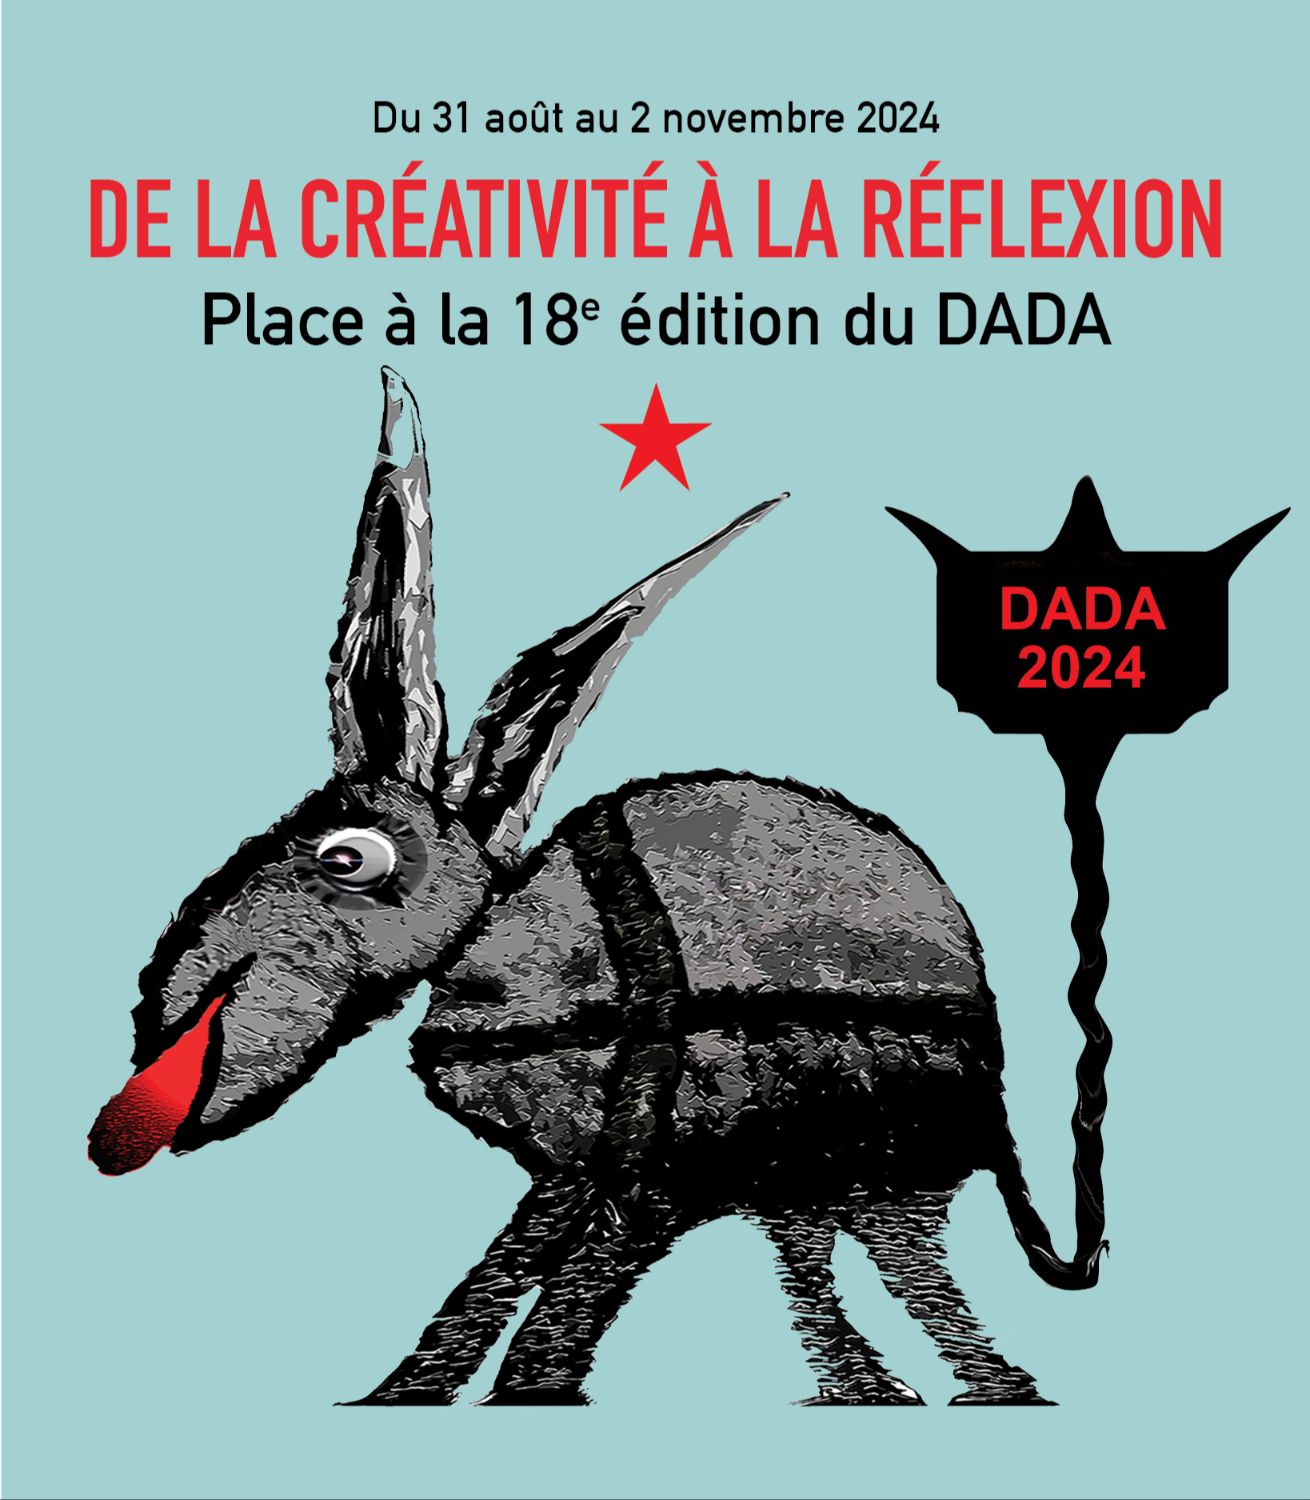 Exposition DADA, 18e édition